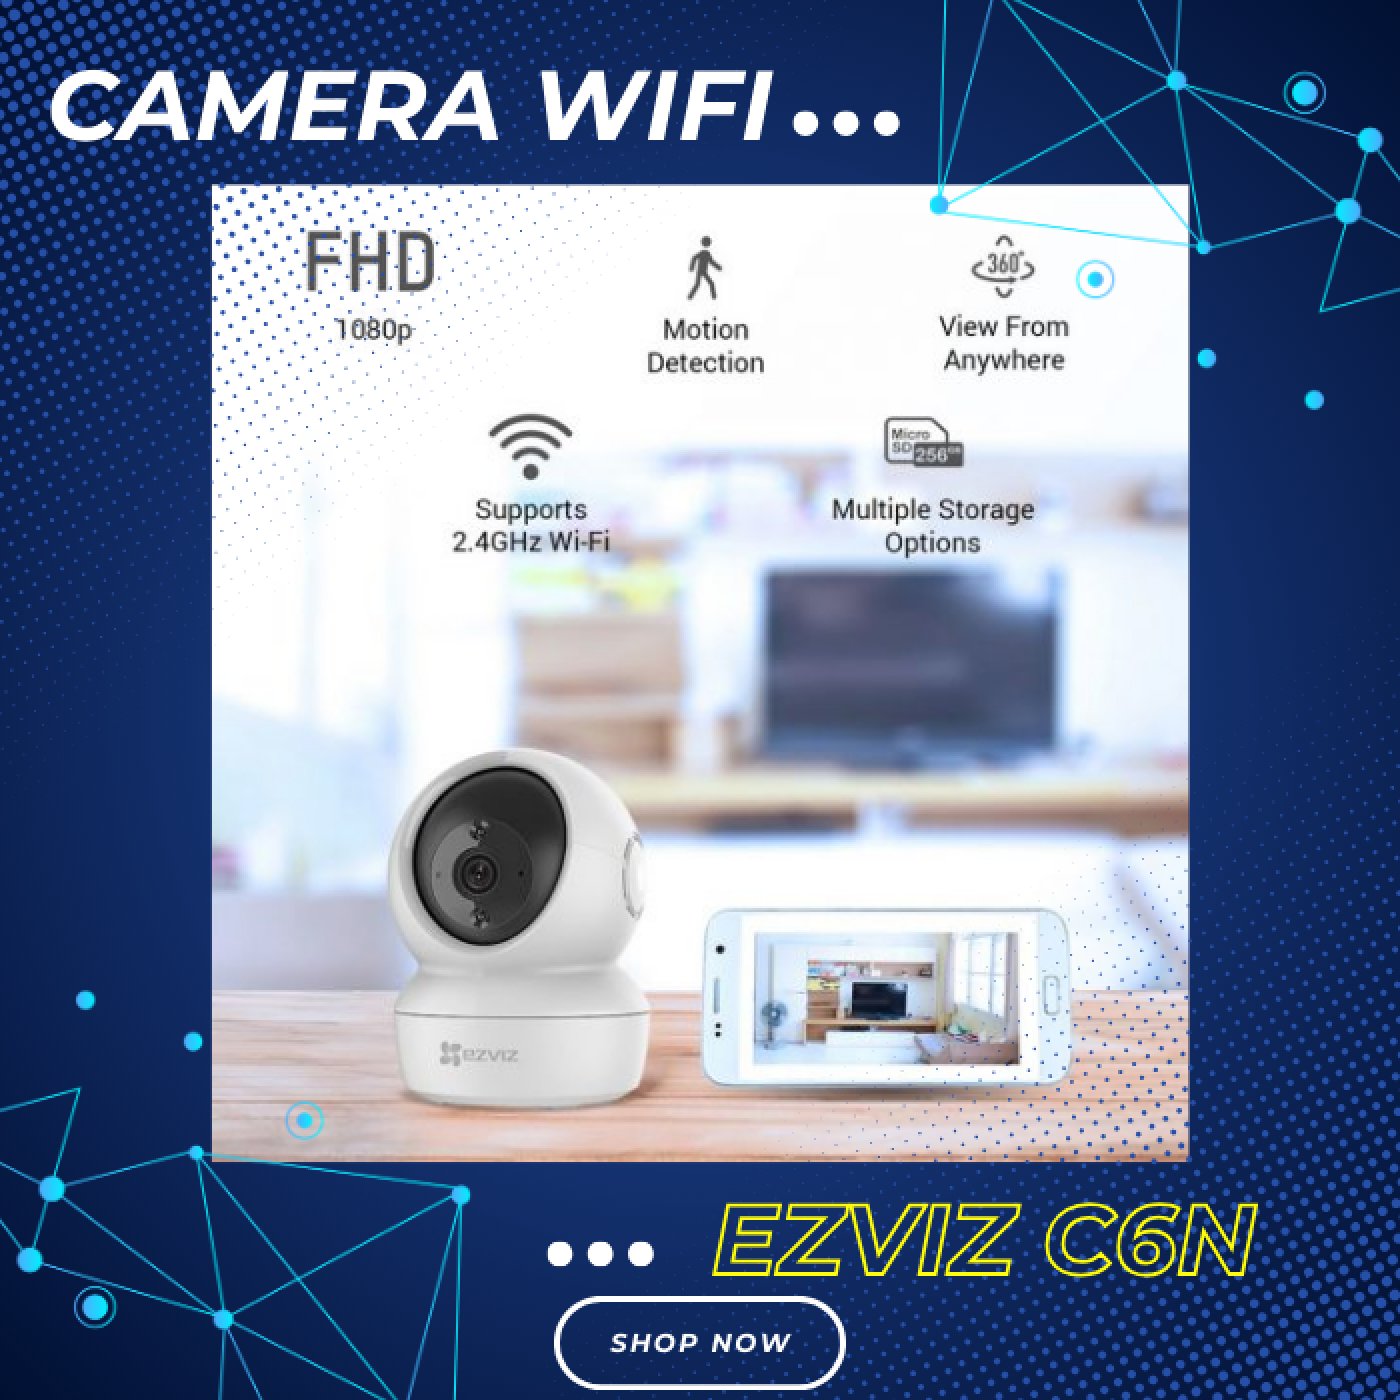 Camera wifi Ezviz C6N 2MP (Hàng chính hãng)